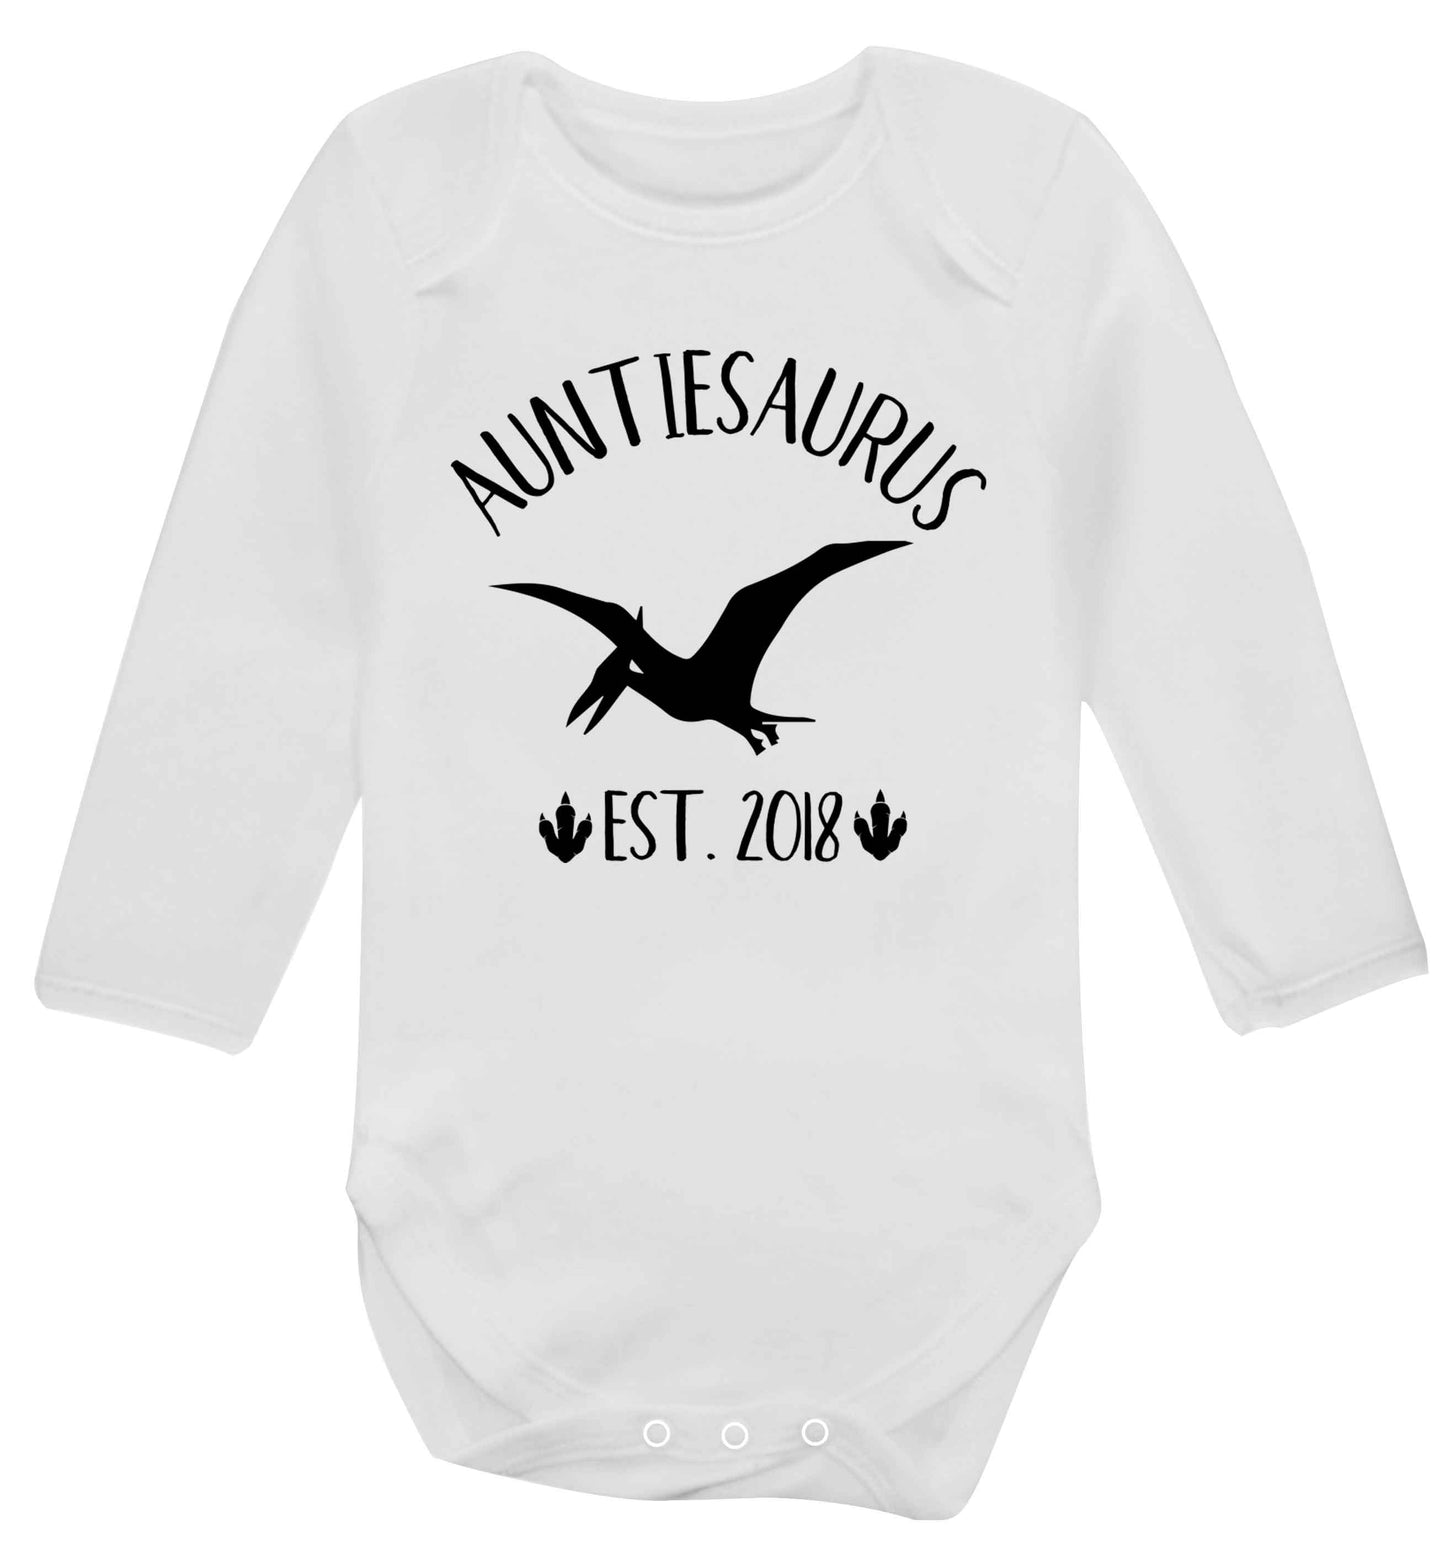 Personalised auntiesaurus since (custom date) Baby Vest long sleeved white 6-12 months